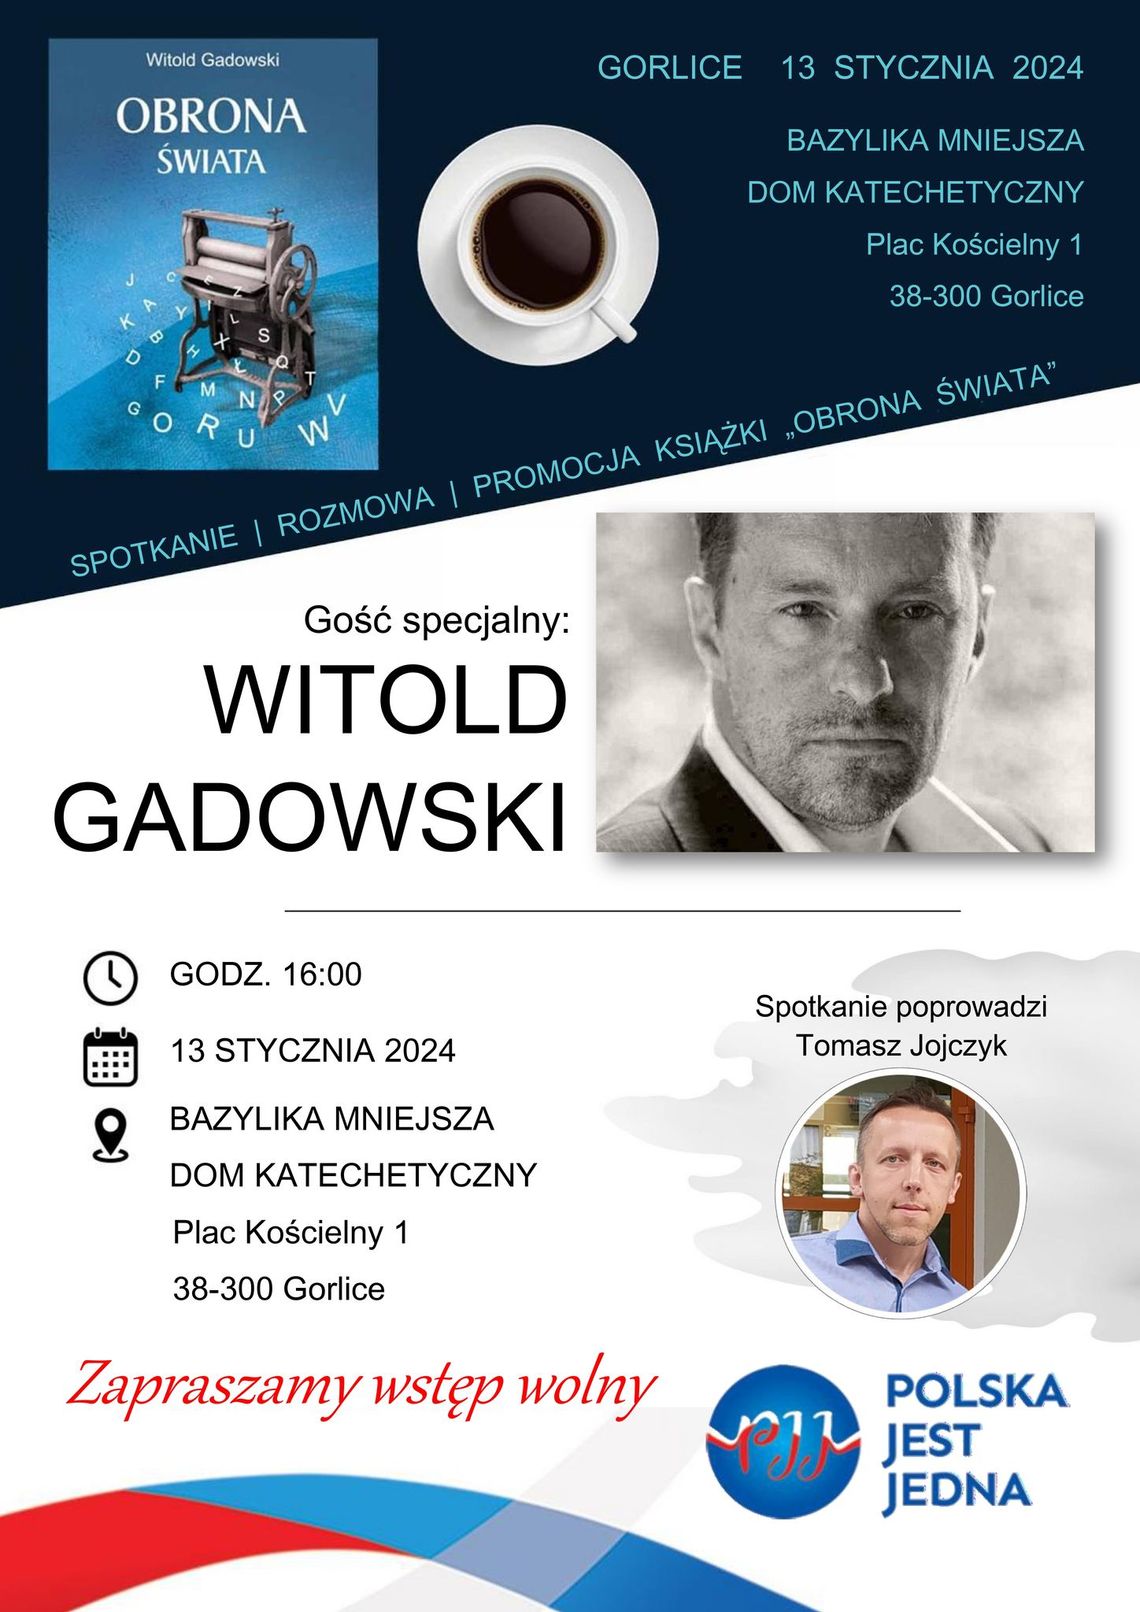 Spotkanie z Witoldem Gadowskim w Gorlicach | halogorlice.info